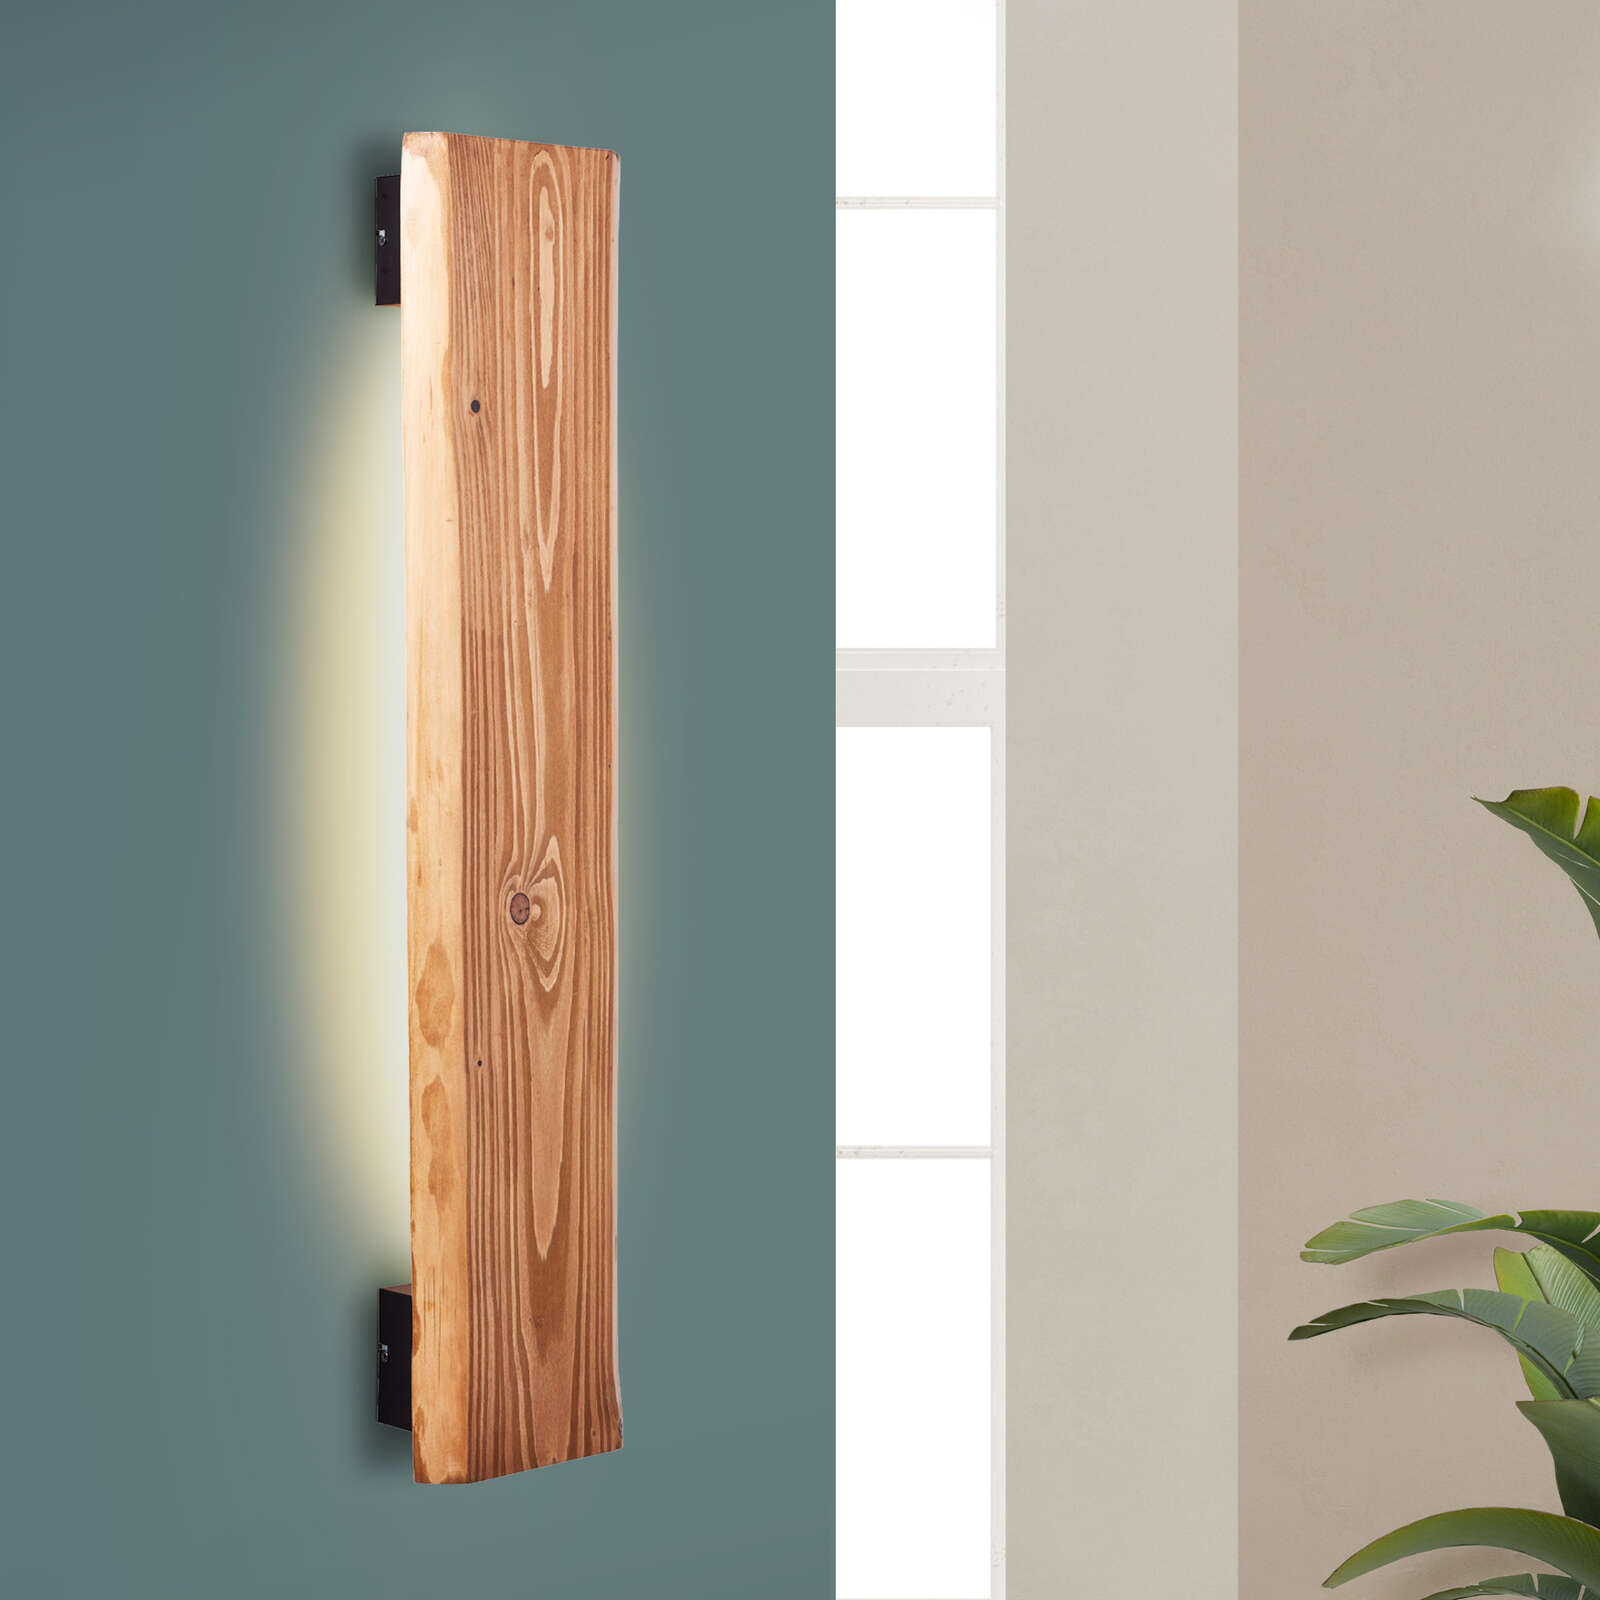             Wooden wall light - Gabriel - Brown
        